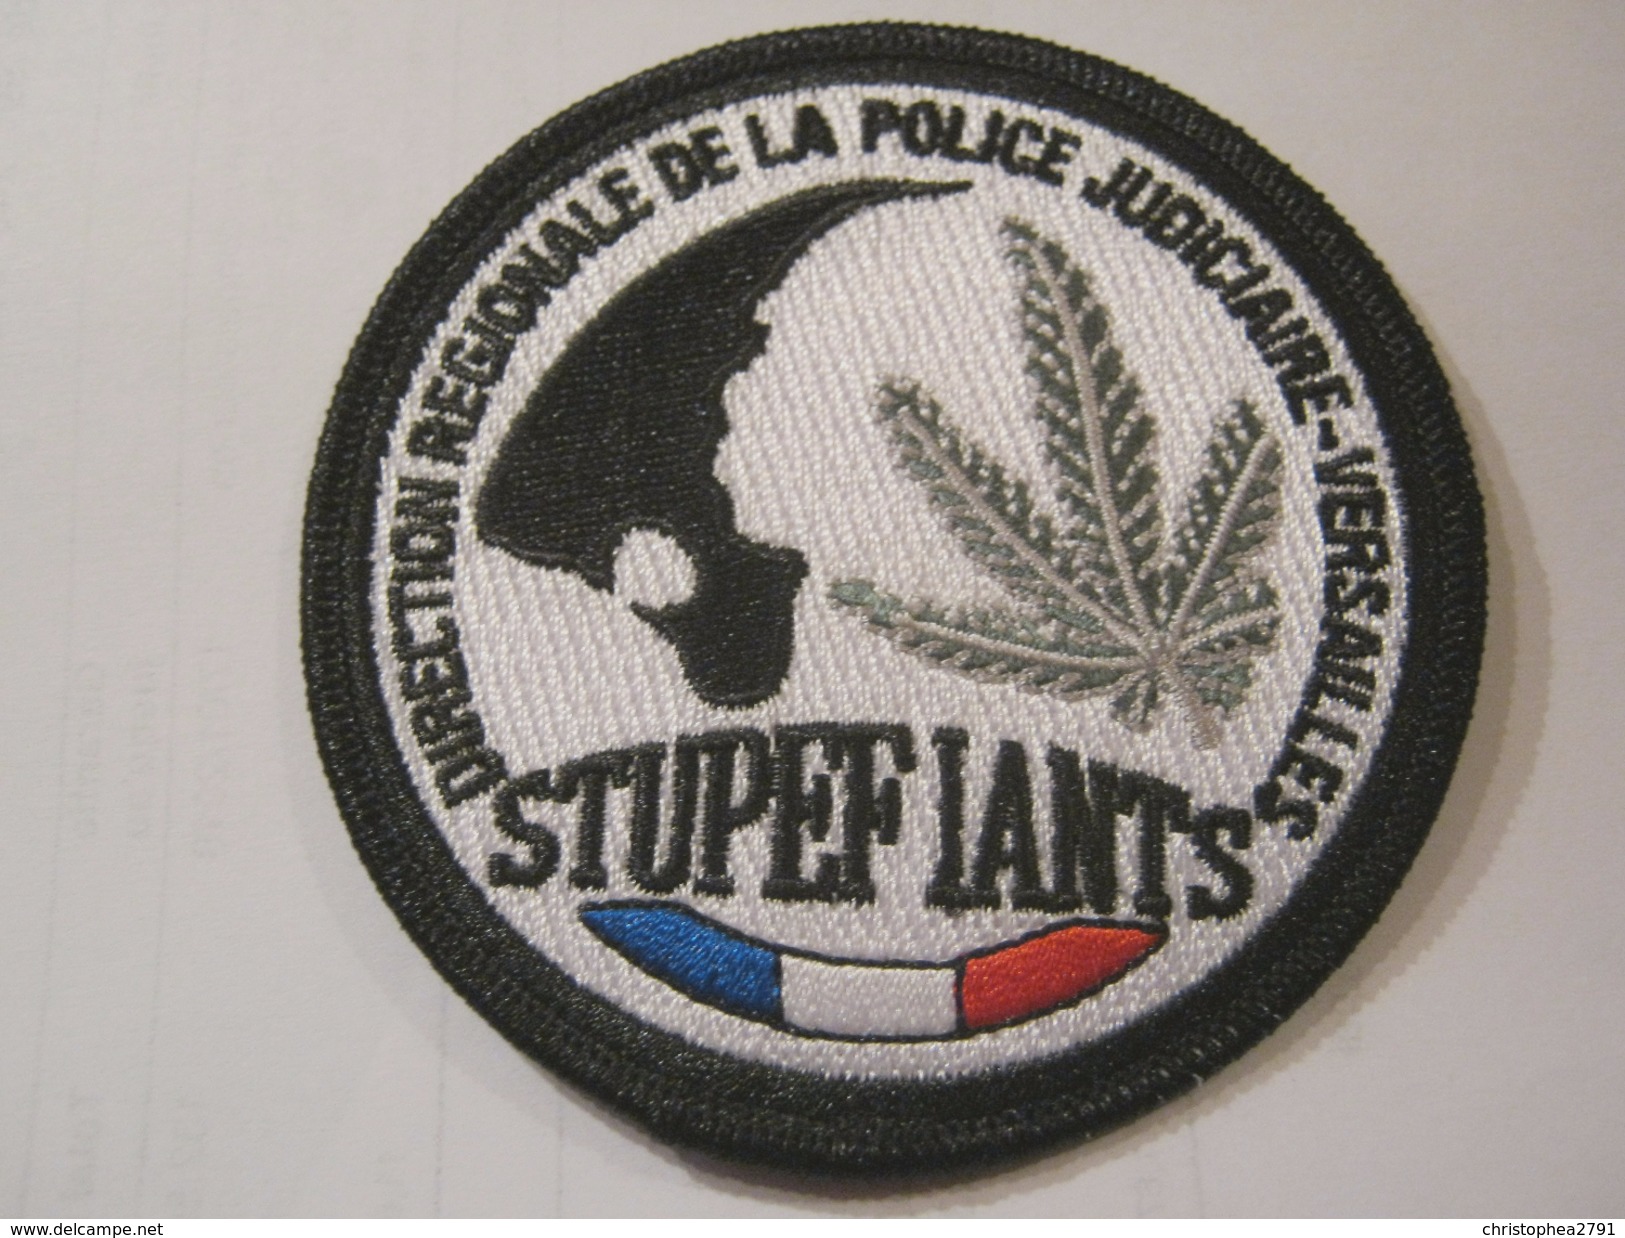 FRANCE - DIRECTION CENTRALE DE LA POLIC JUDICIAIRE SRPJ TOULOUSE PATCH